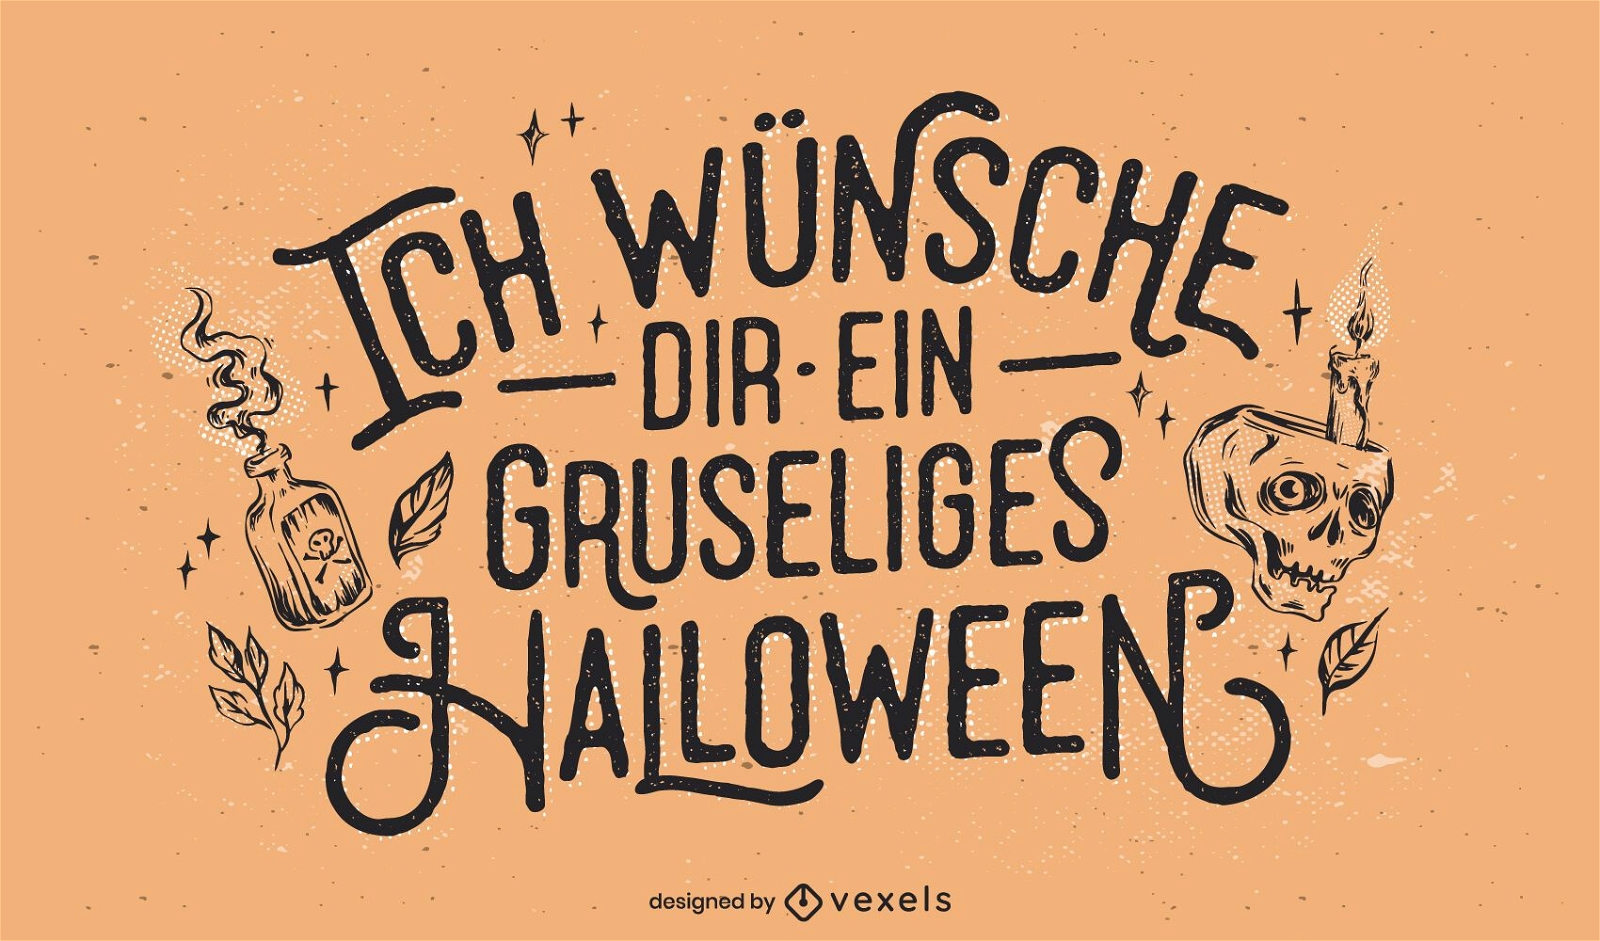 Letras arrepiantes do dia das bruxas em alemão